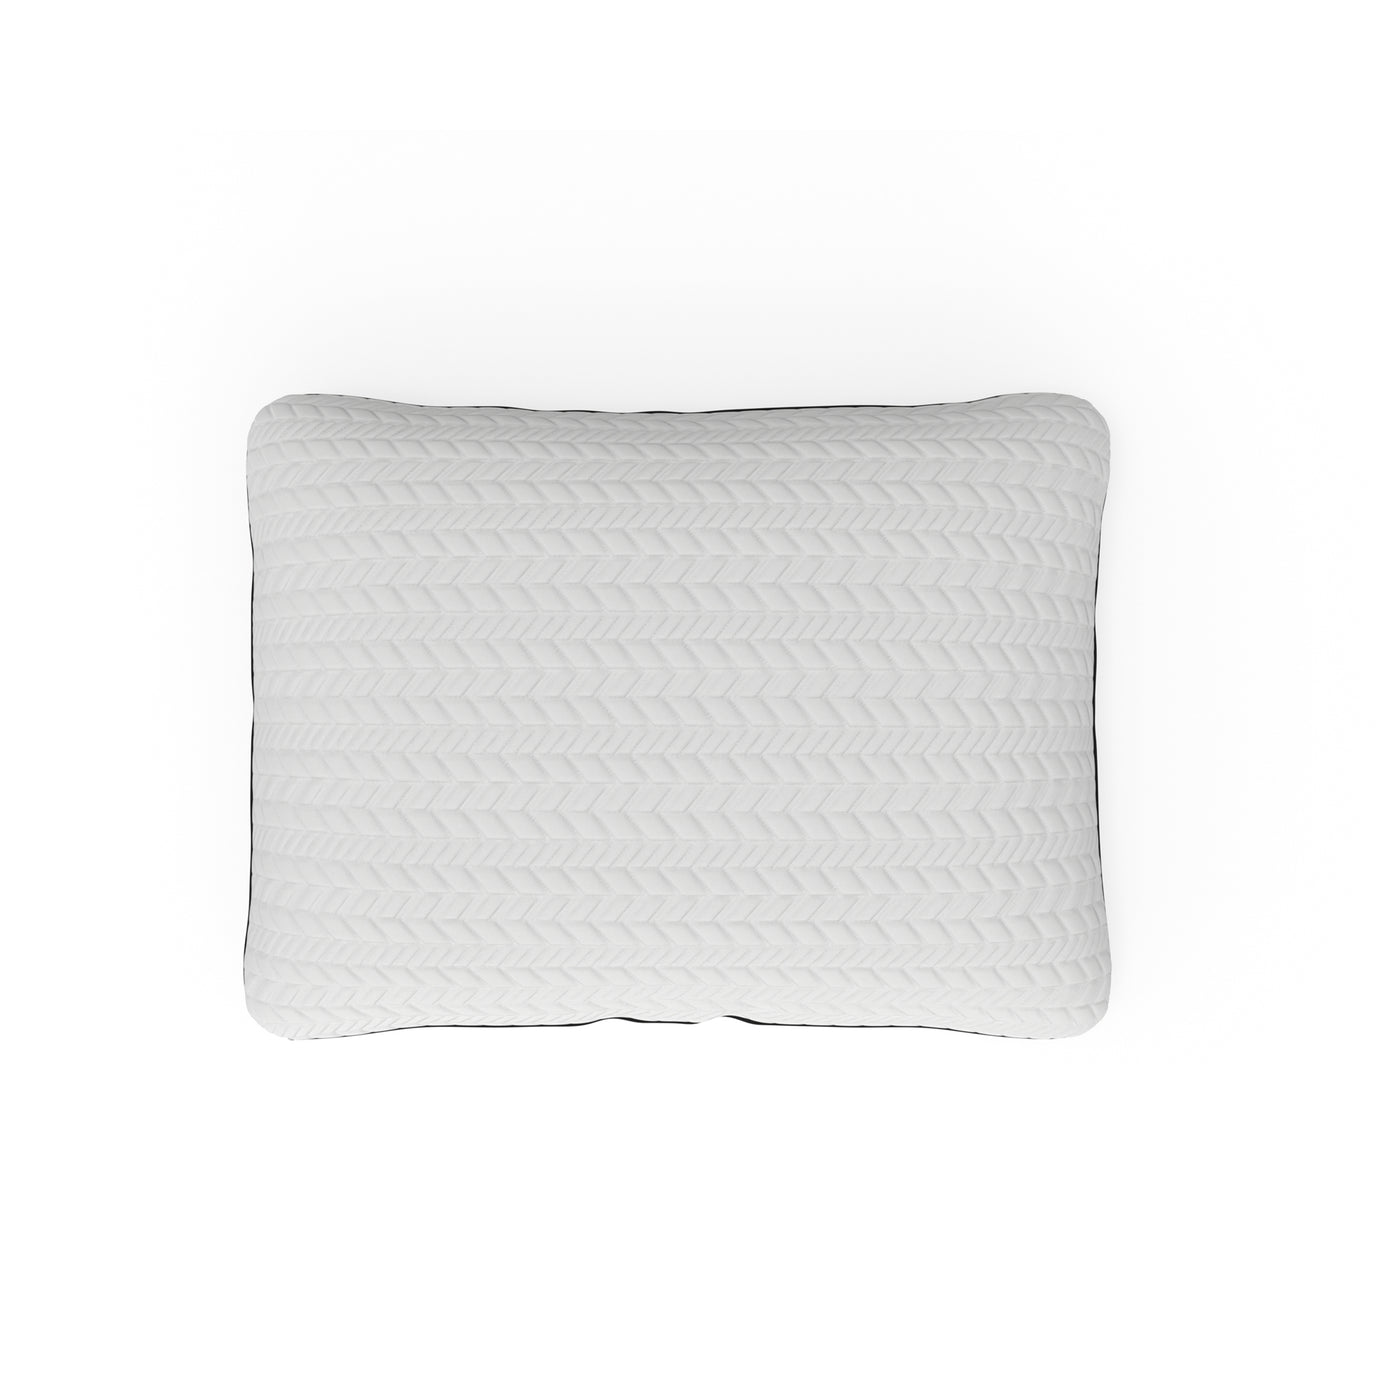 Reactive Foam Shredded Pillow